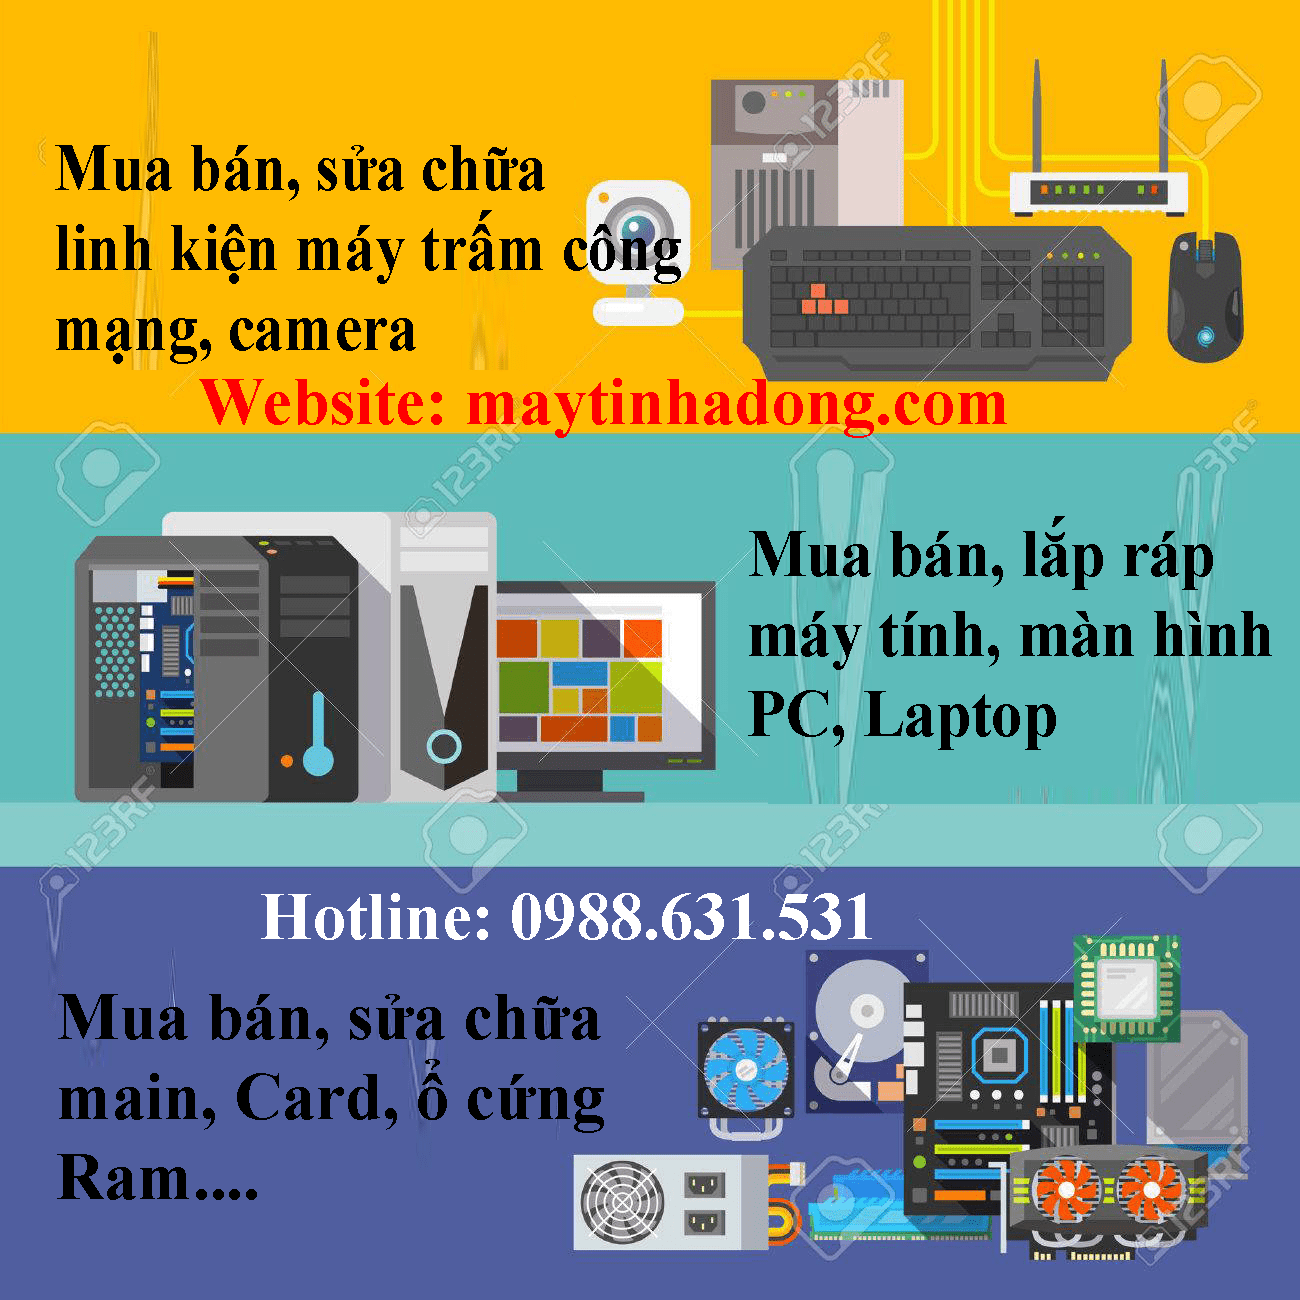 Sửa máy tính tại nhà Vĩnh phúc giá rẻ bất ngờ LH: 0988.631.531